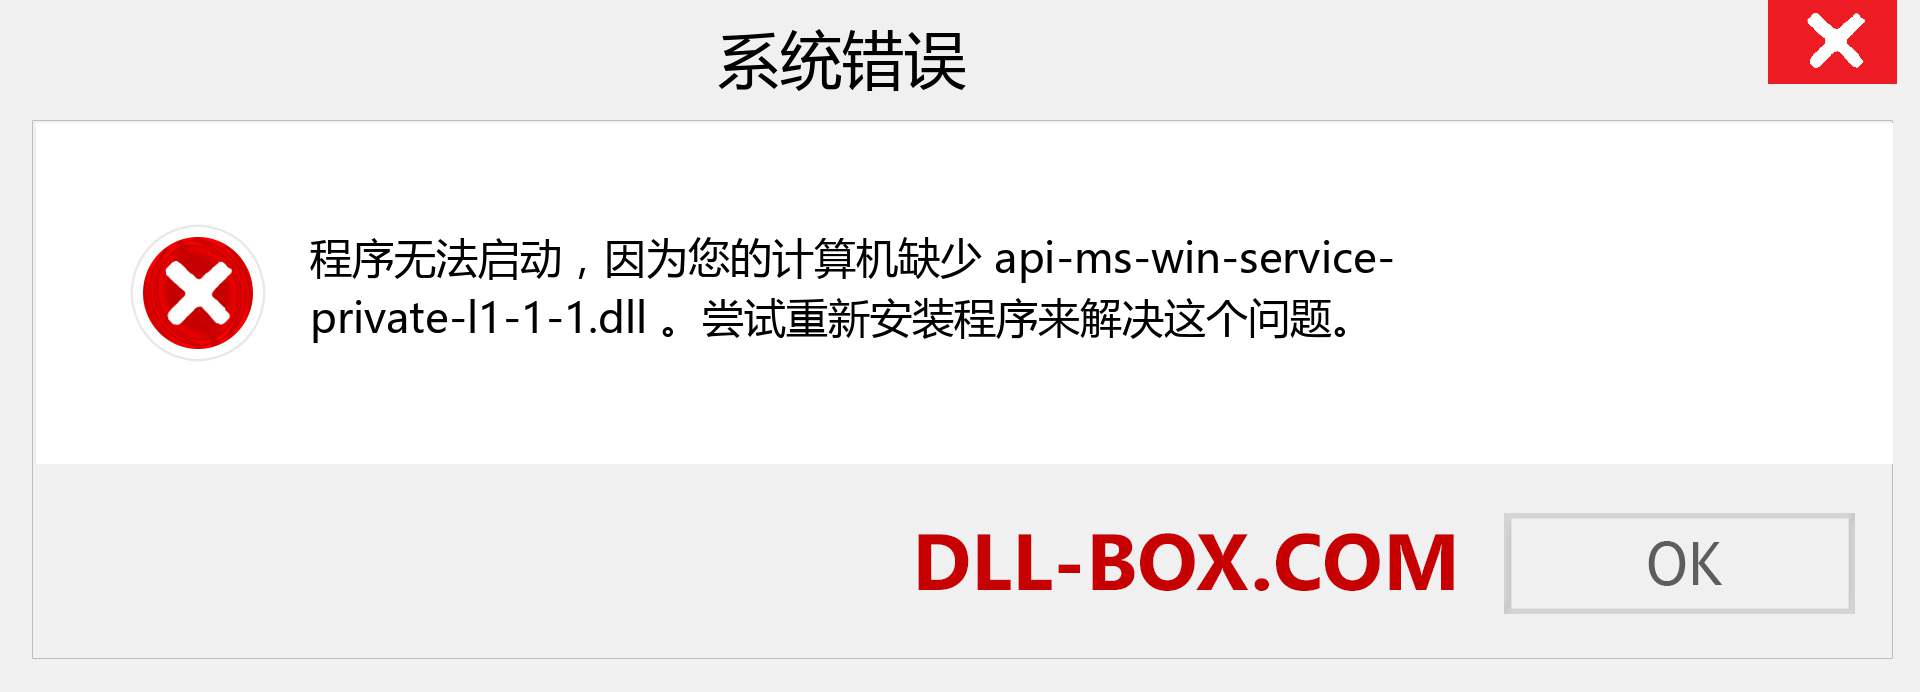 api-ms-win-service-private-l1-1-1.dll 文件丢失？。 适用于 Windows 7、8、10 的下载 - 修复 Windows、照片、图像上的 api-ms-win-service-private-l1-1-1 dll 丢失错误